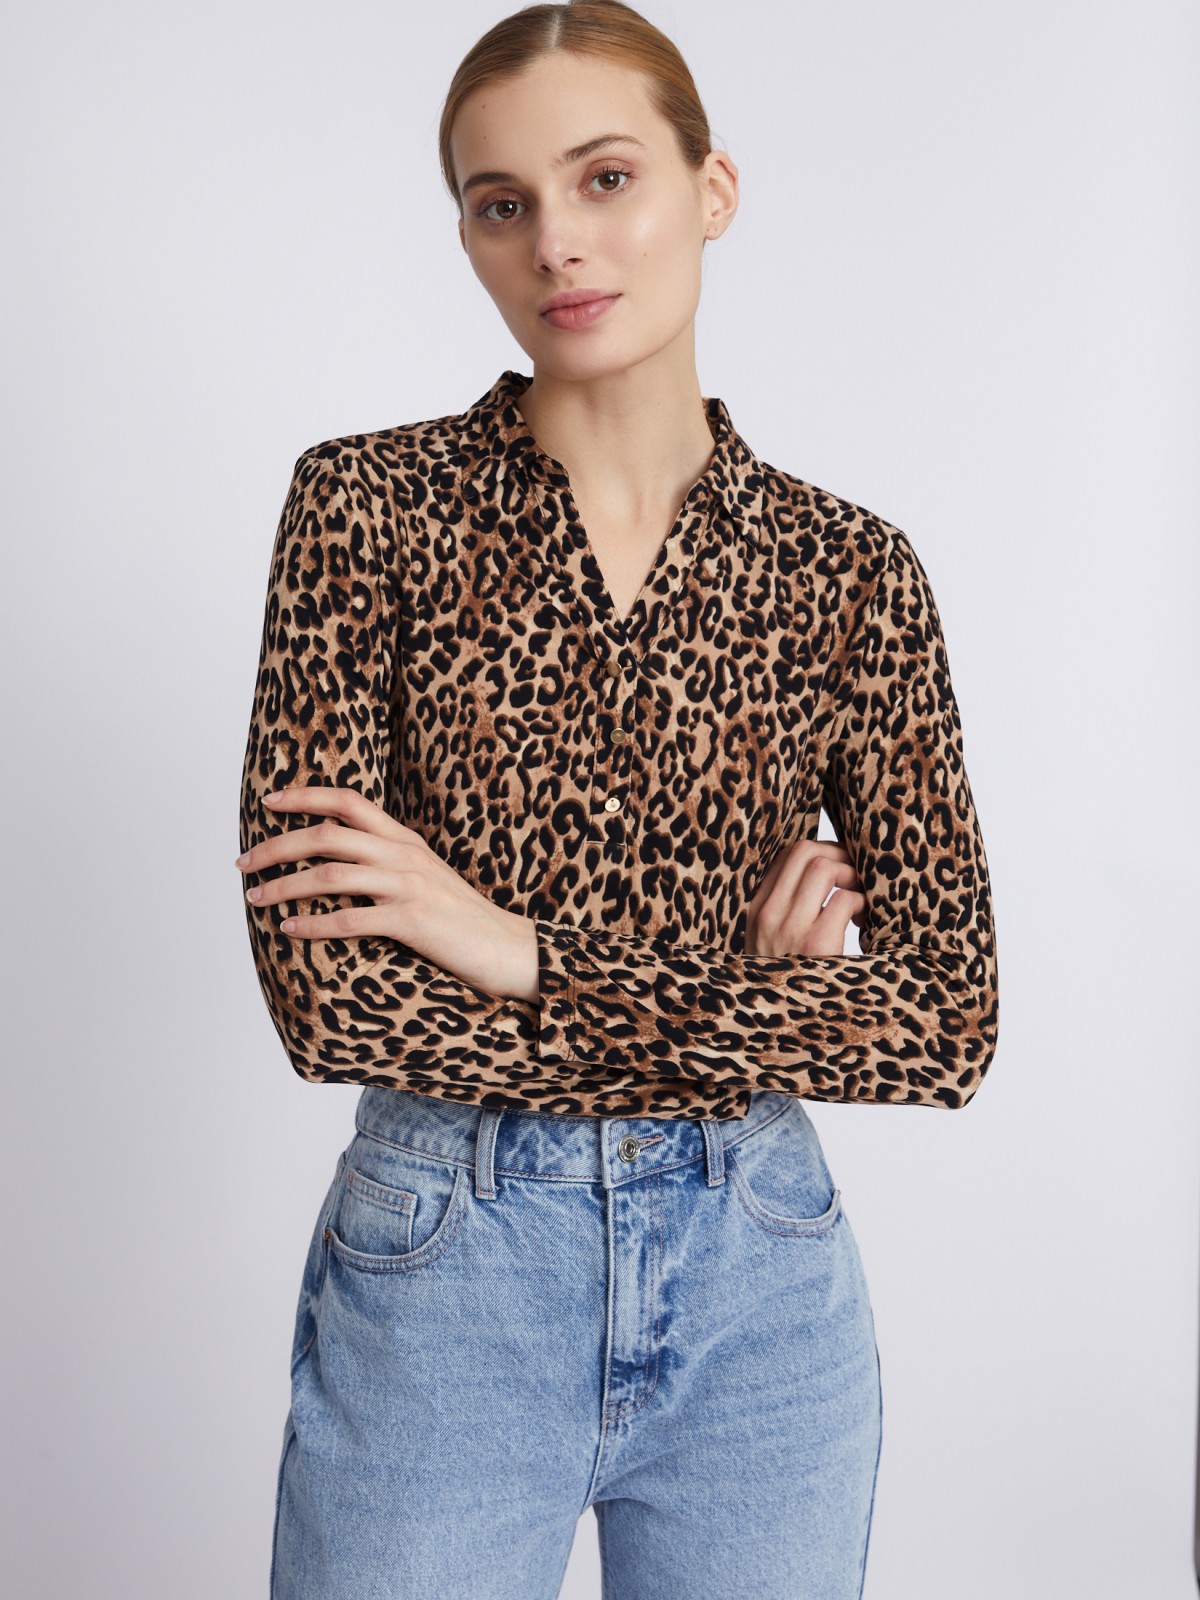 Трикотажная блузка с длинным рукавом и леопардовым принтом zolla 023311152513, цвет бежевый, размер S - фото 3